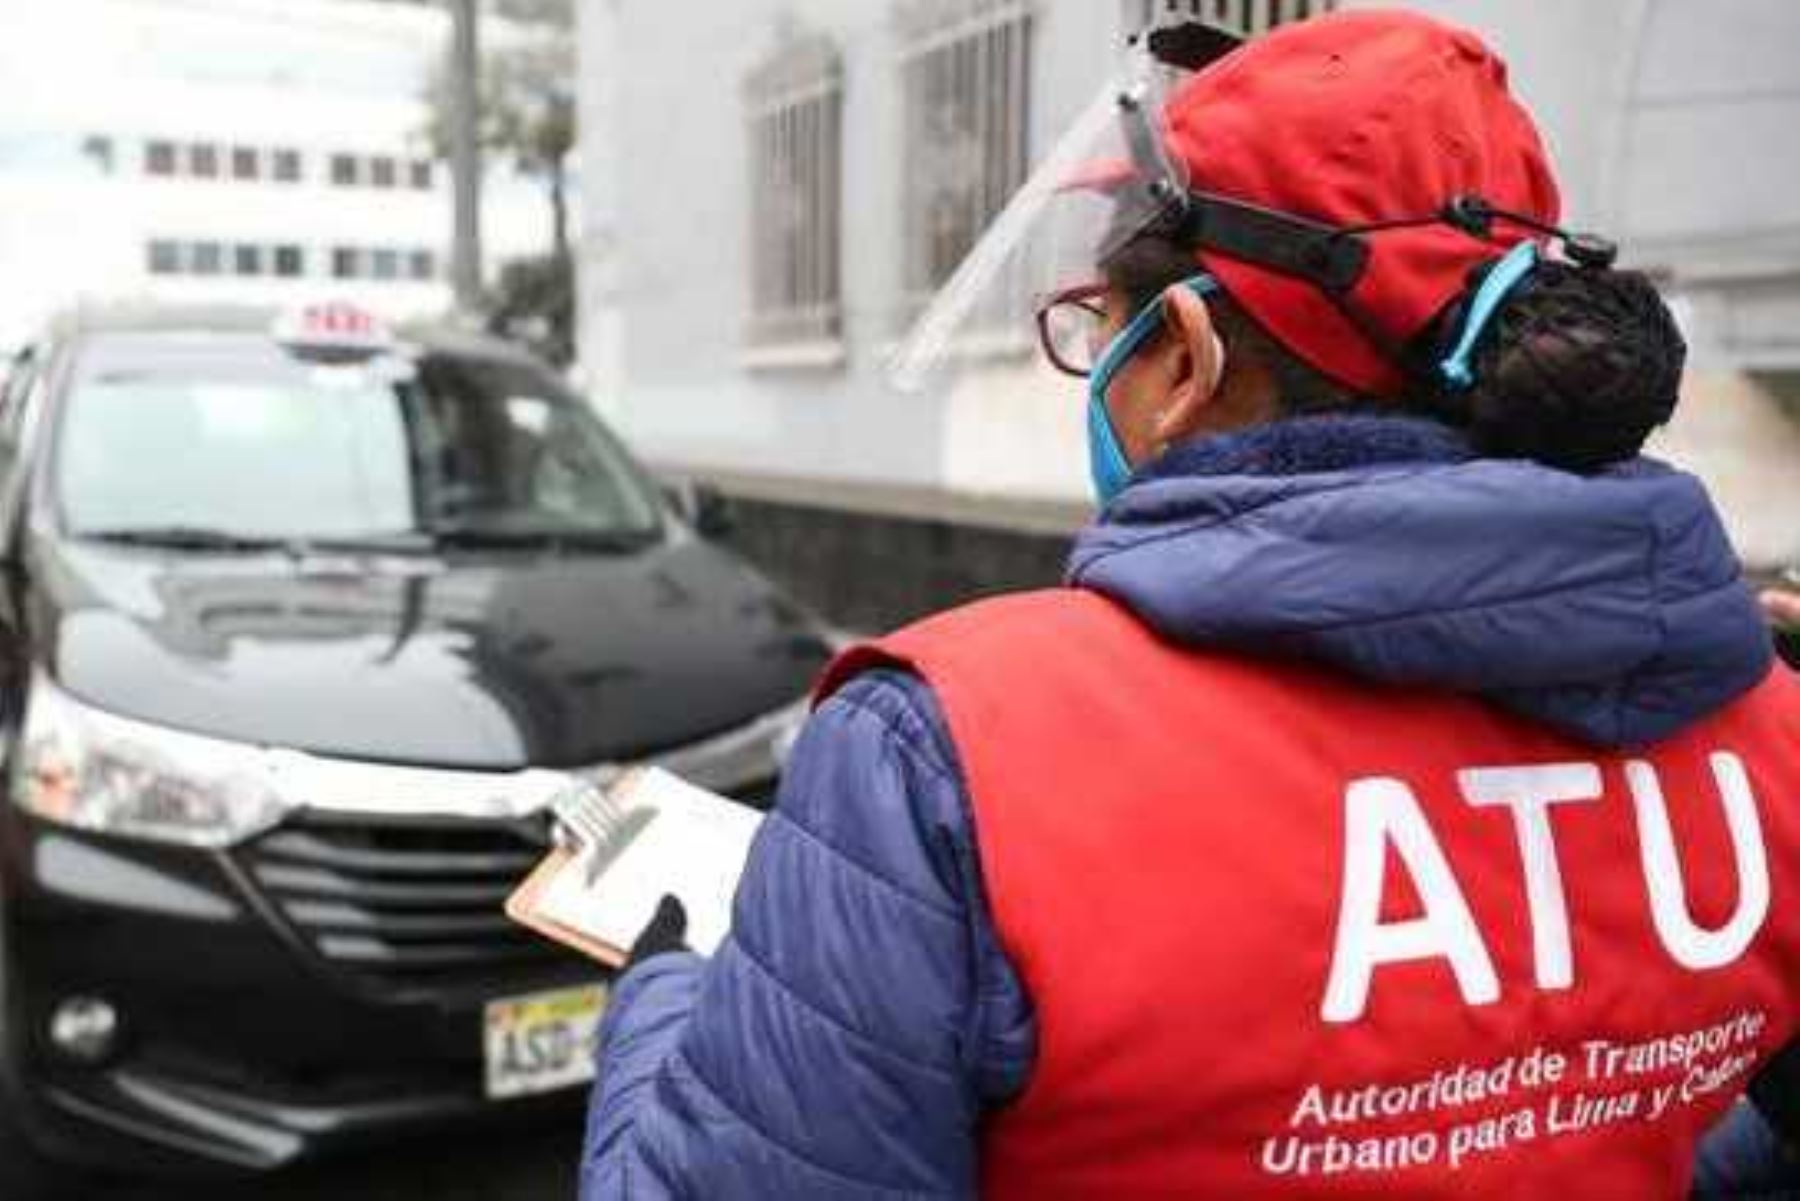 ATU publicó proyecto de reglamento que regula el servicio de taxi en Lima y Callao. Foto: ANDINA/Difusión.